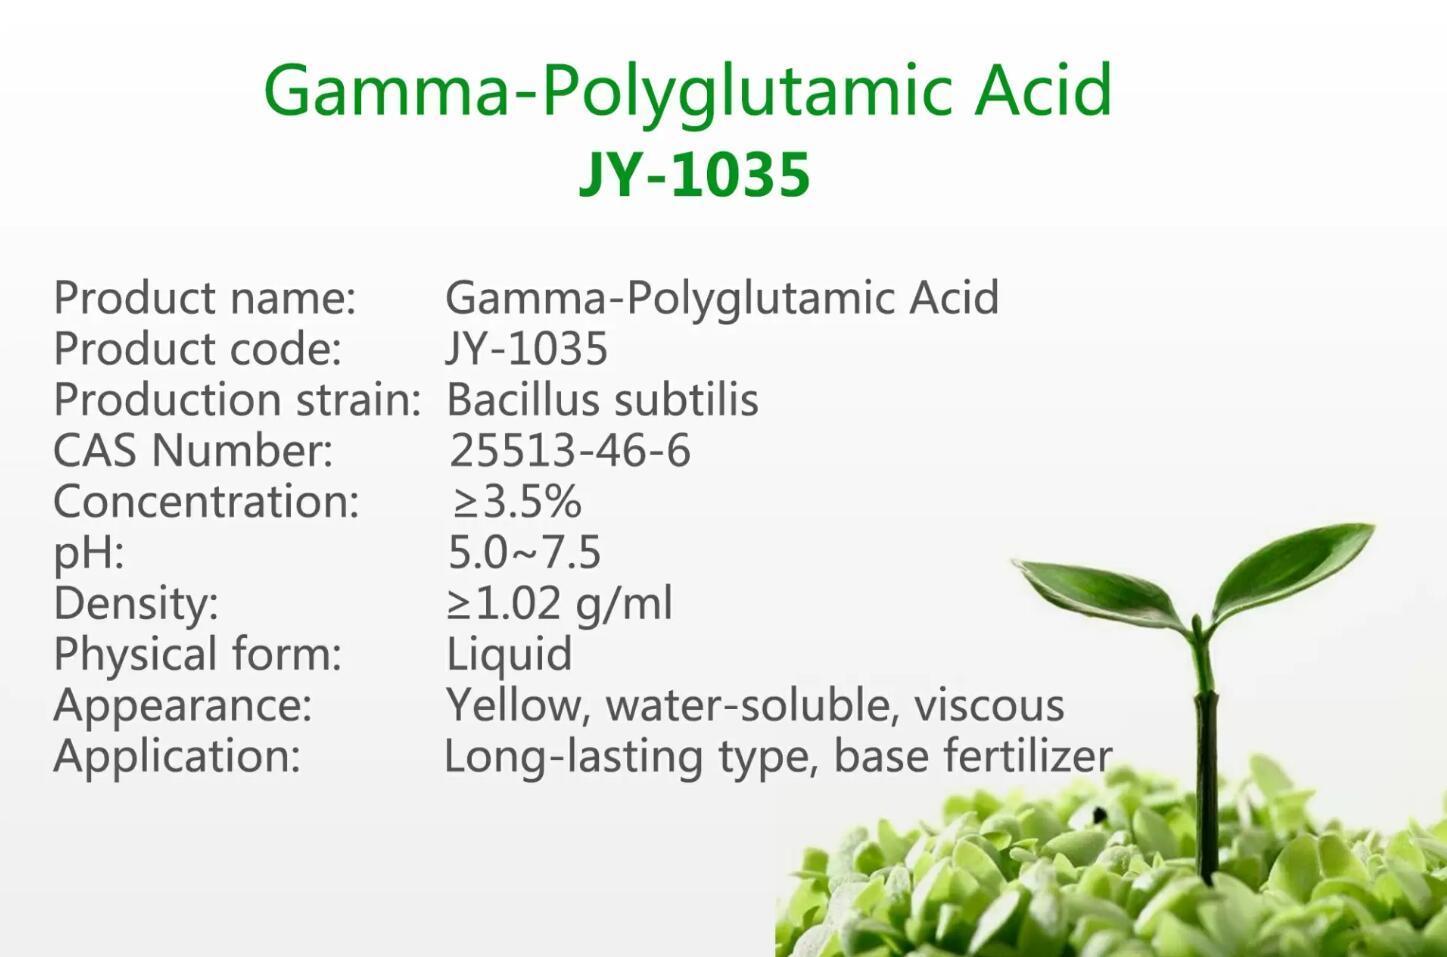 γ-Polyglutamic Acid JY-1035 For sale